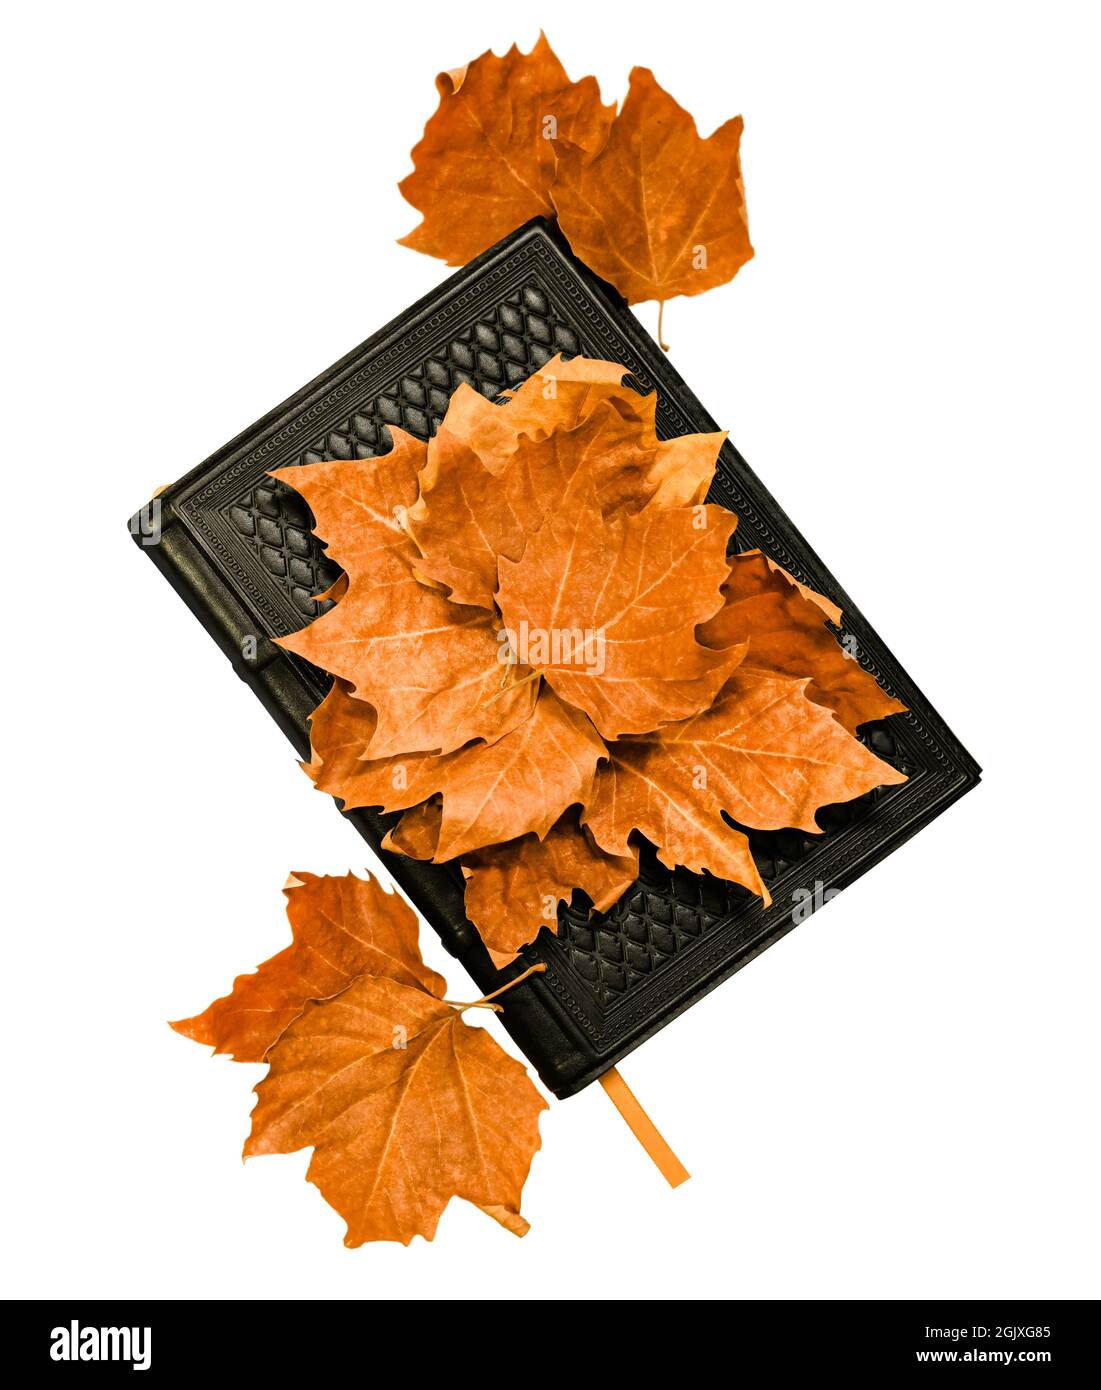 Carnet en cuir et feuilles séchées rouges d'automne. Isolé sur un fond blanc. Banque D'Images